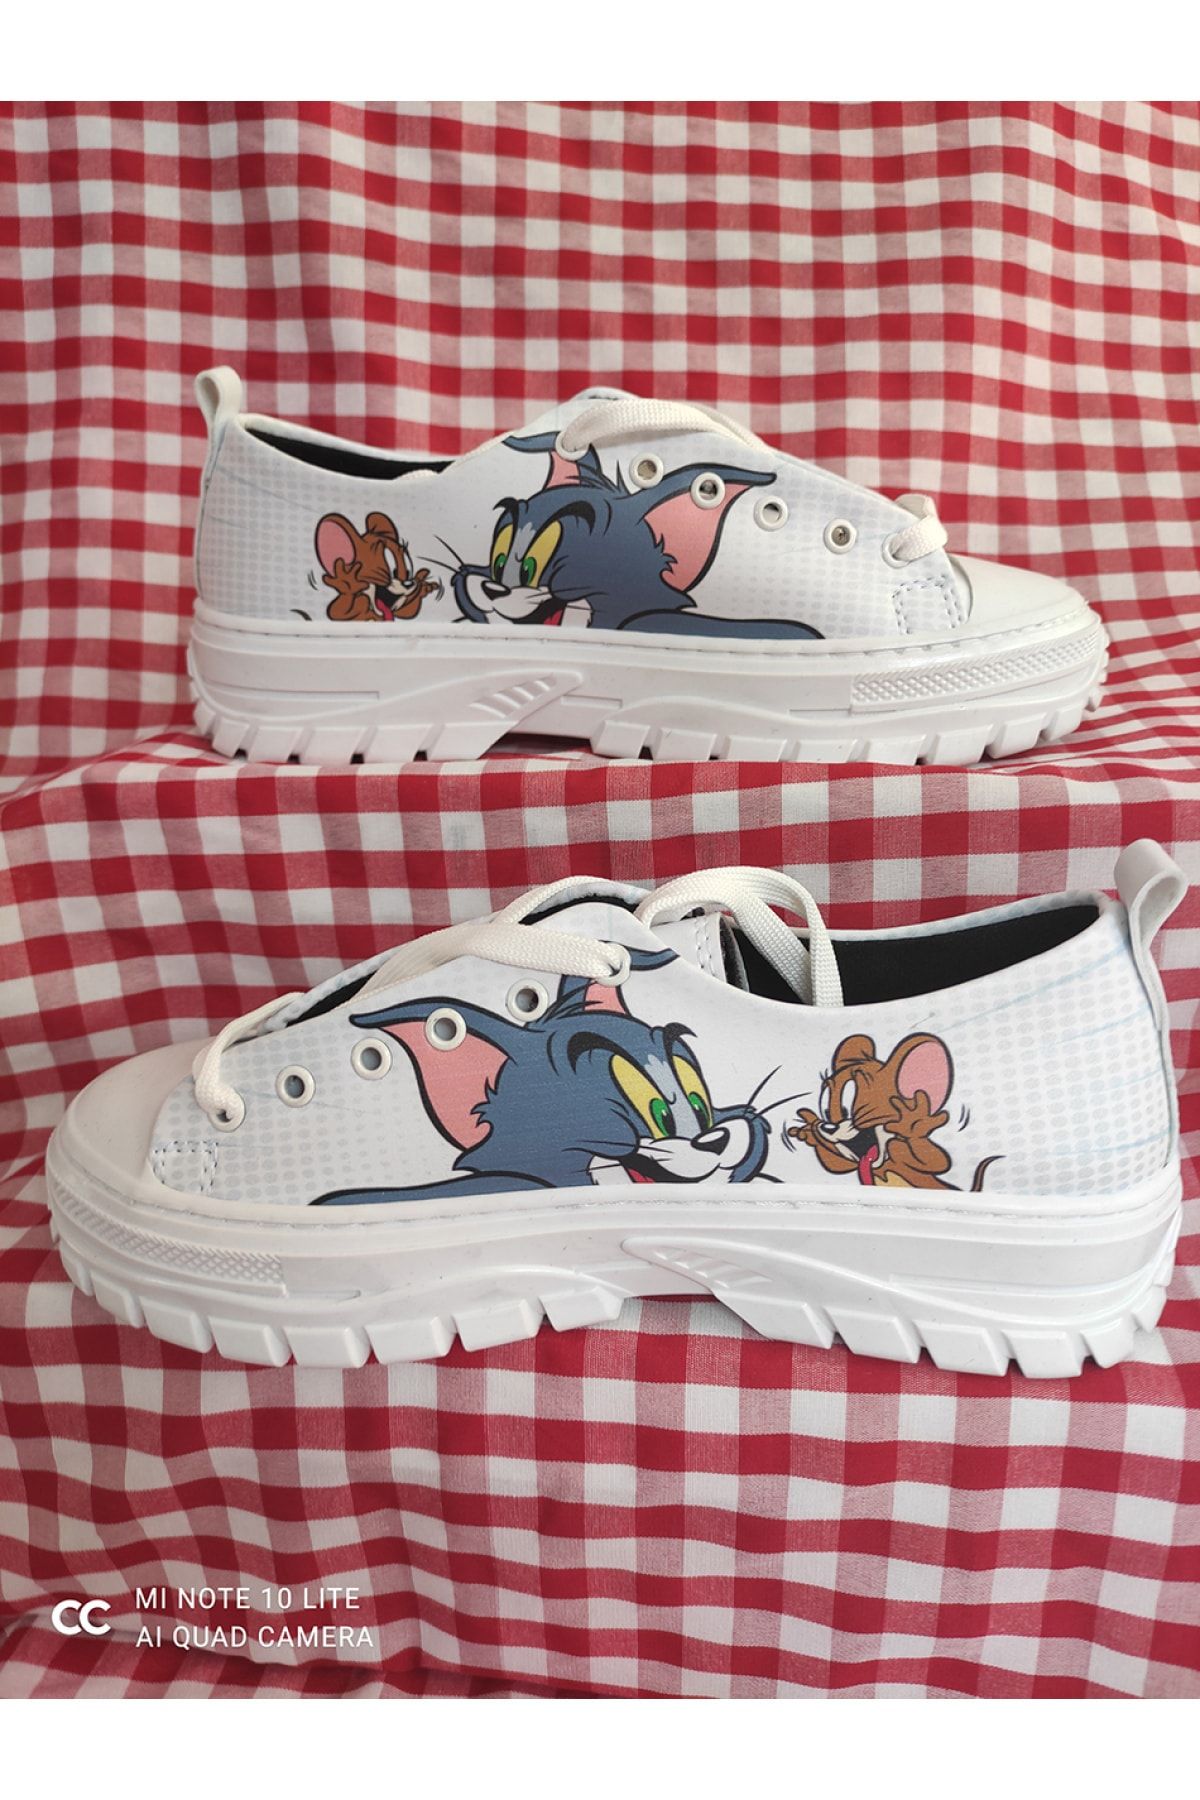 Merve Gurdal Özel Tasarım Kadın Tom Ve Jerry Beyaz Sneaker Ayakkabı